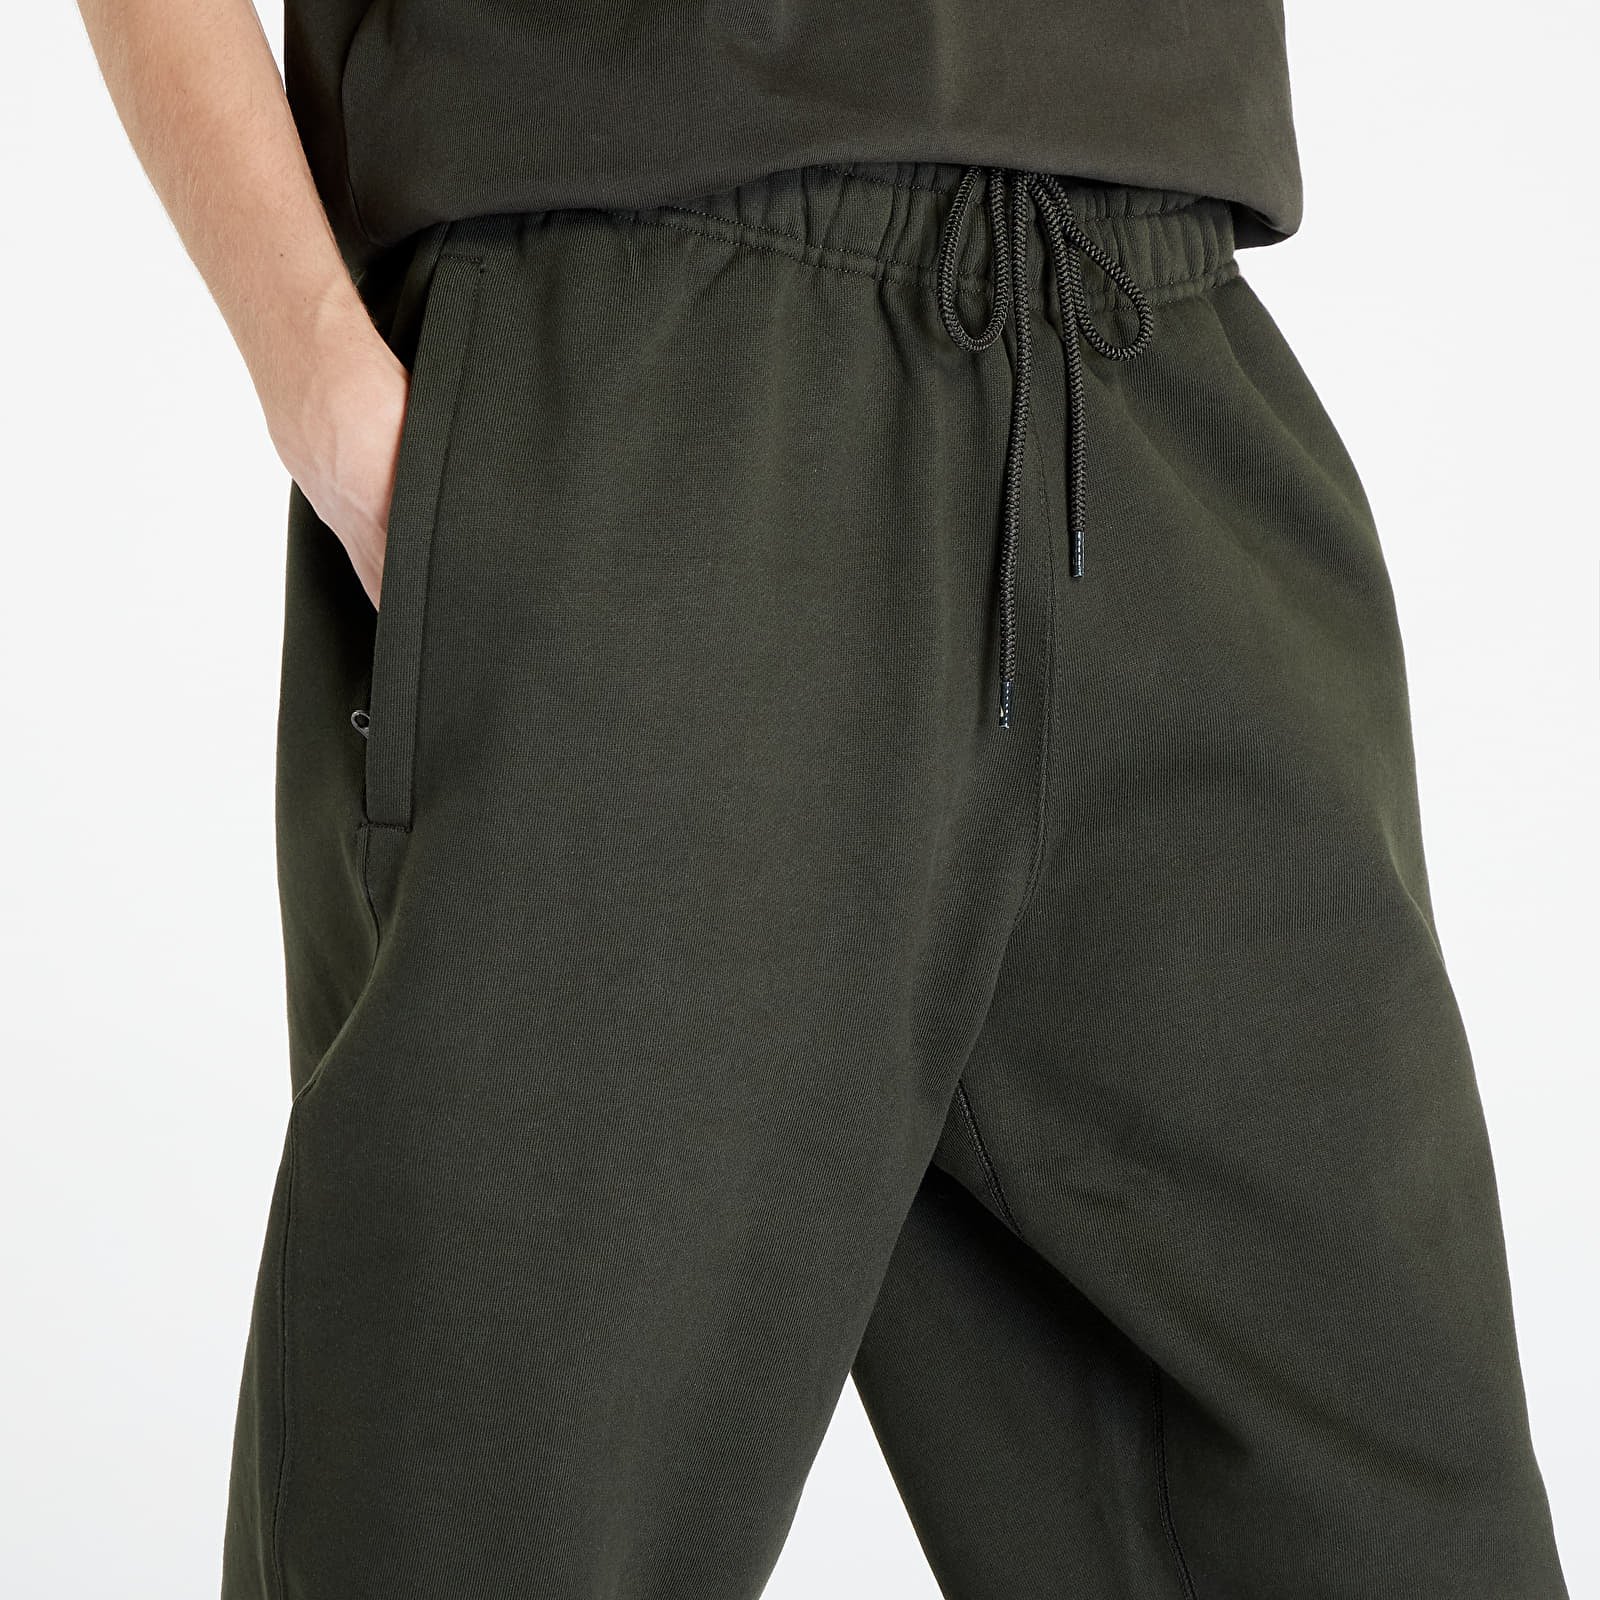 【正規品HOT】Nike Billie Eilish Fleece Pants サイズM パンツ